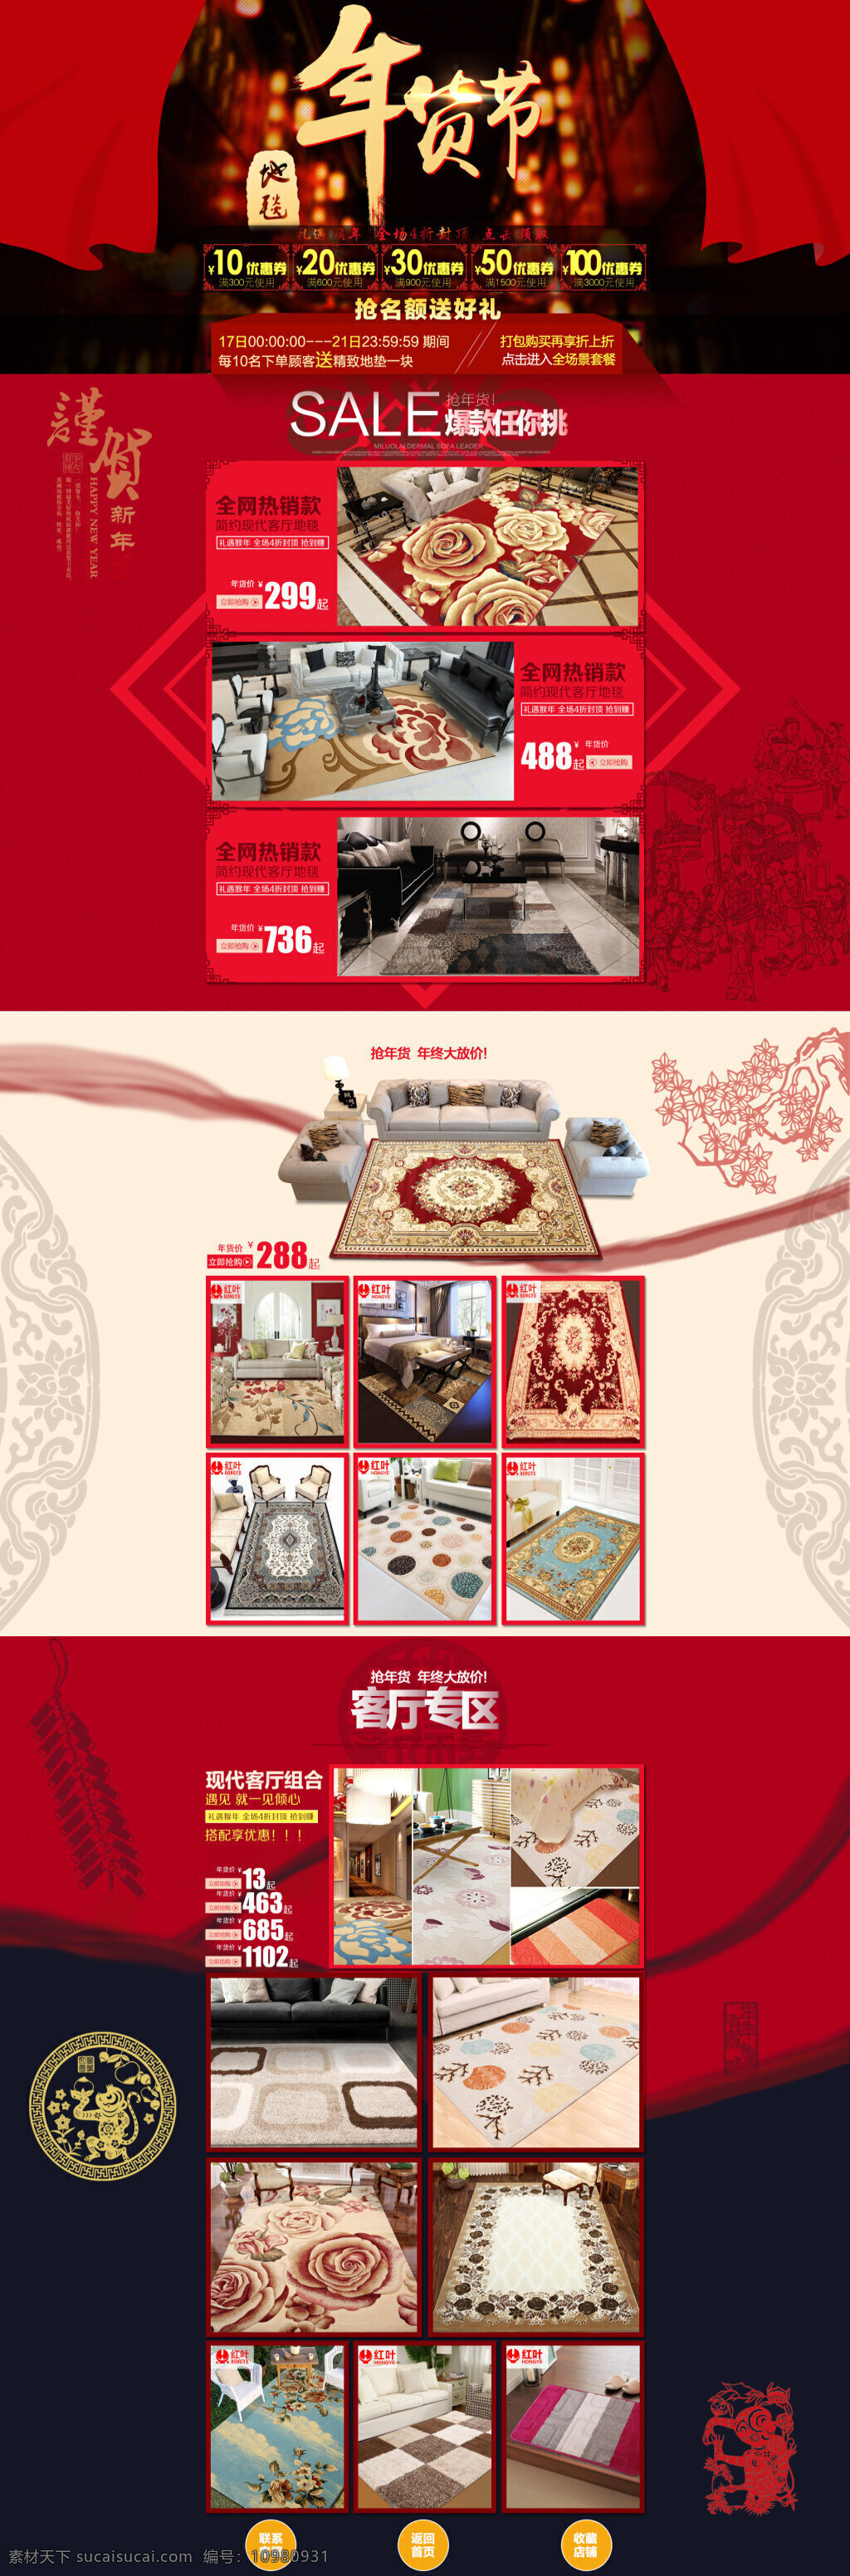 年货 节 首页 模板 中国 风 客厅地毯 猴年 年货节 首页模板 中国风 客厅 地毯 猴年首页 红色